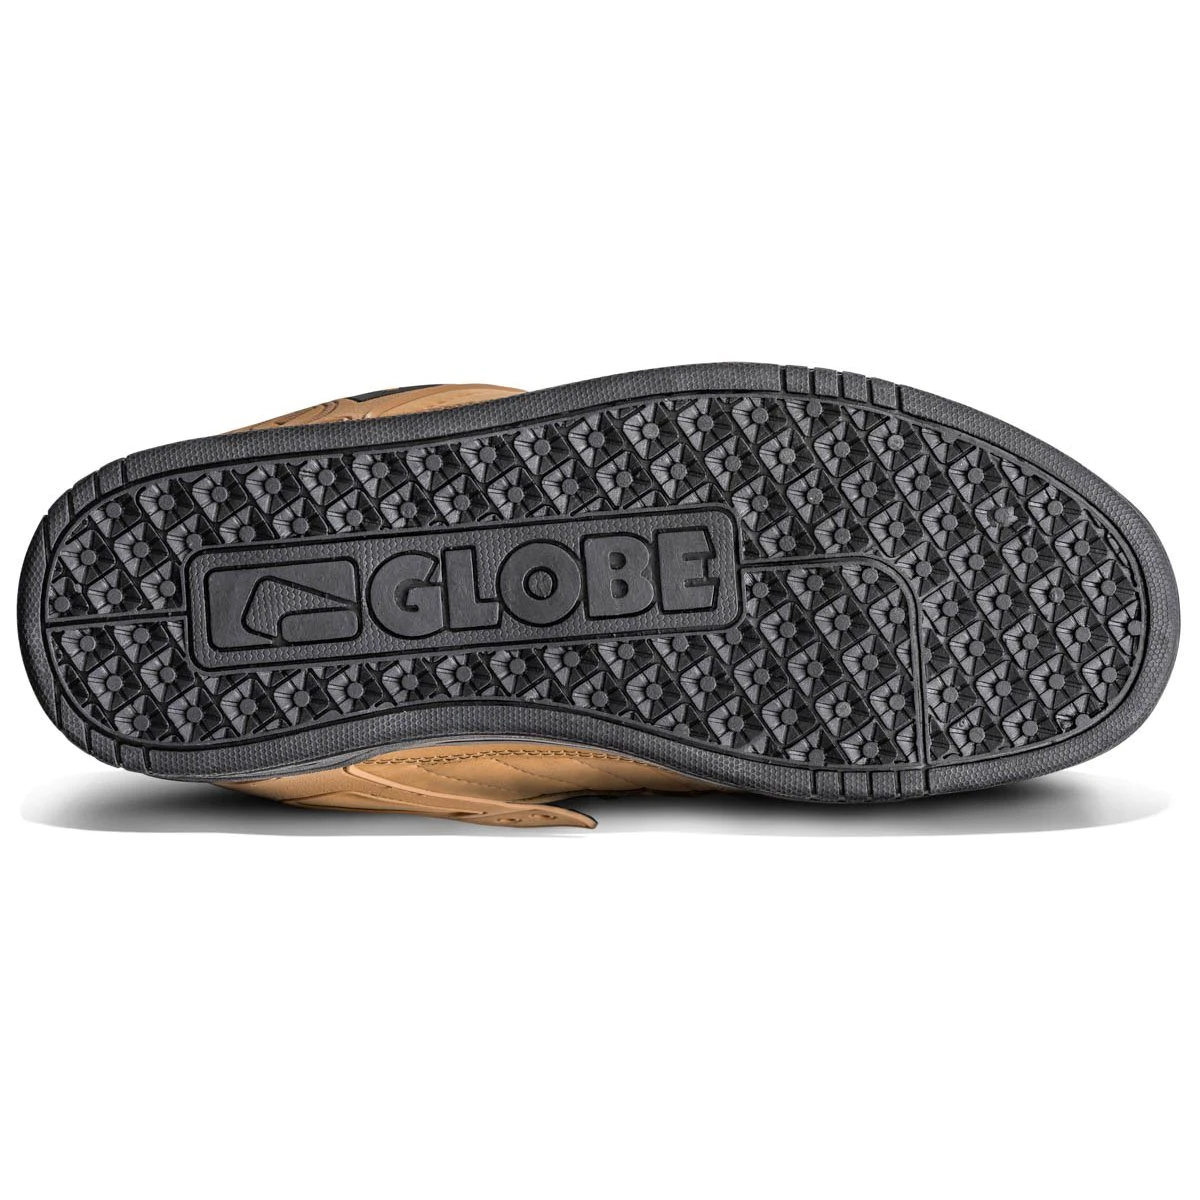 Globe Tilt skateboard shoes wheat / black / winter